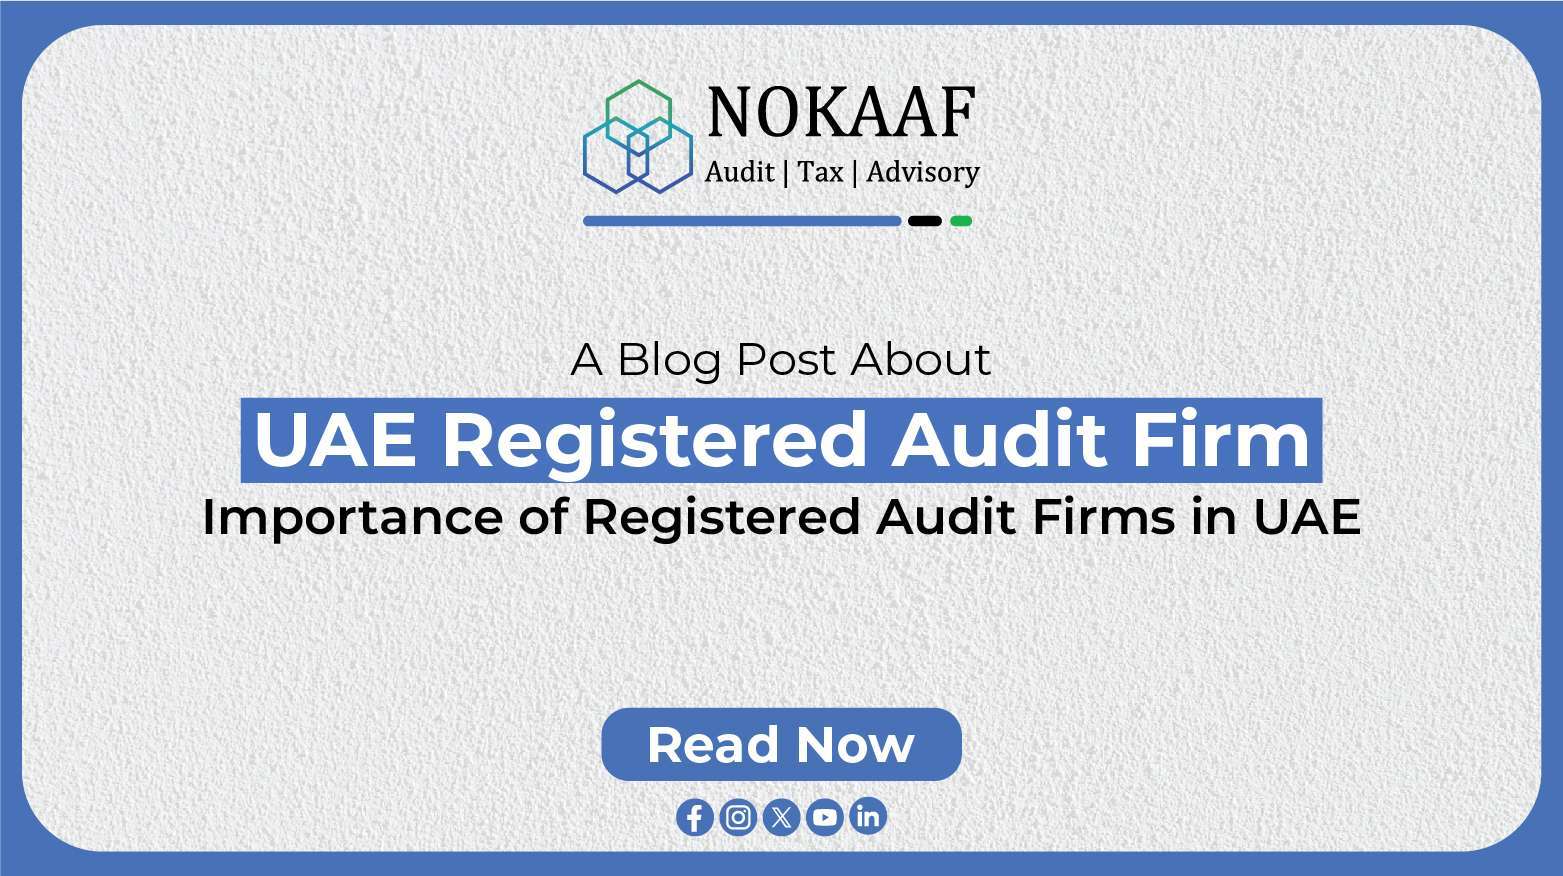 UAE Registered Audit Firm